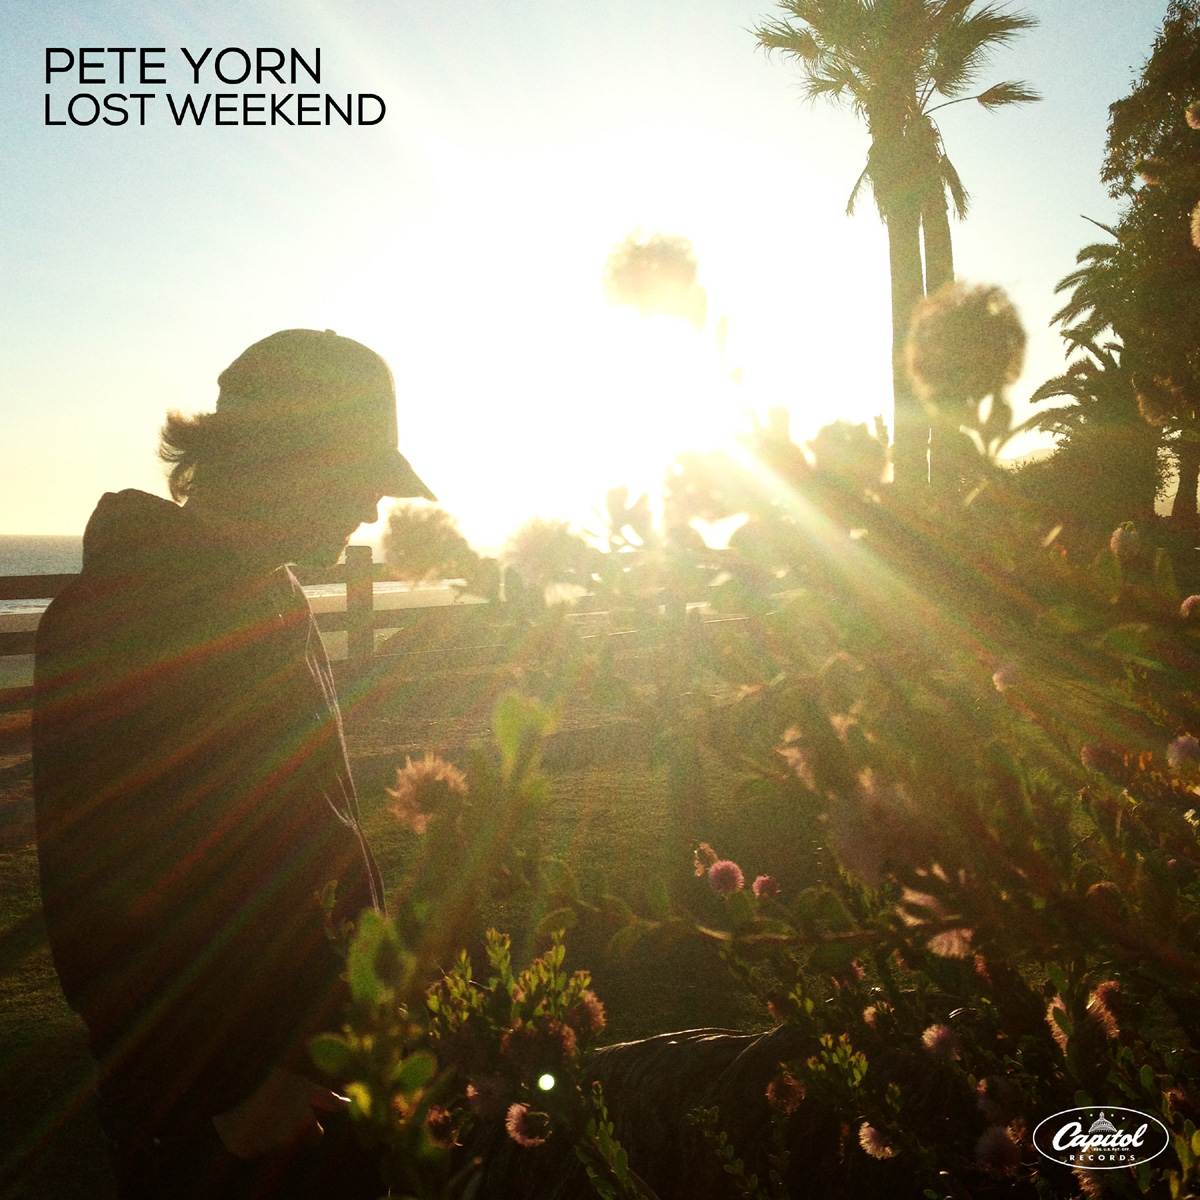 VitaminB: Pete Yorn - Lost Weekend